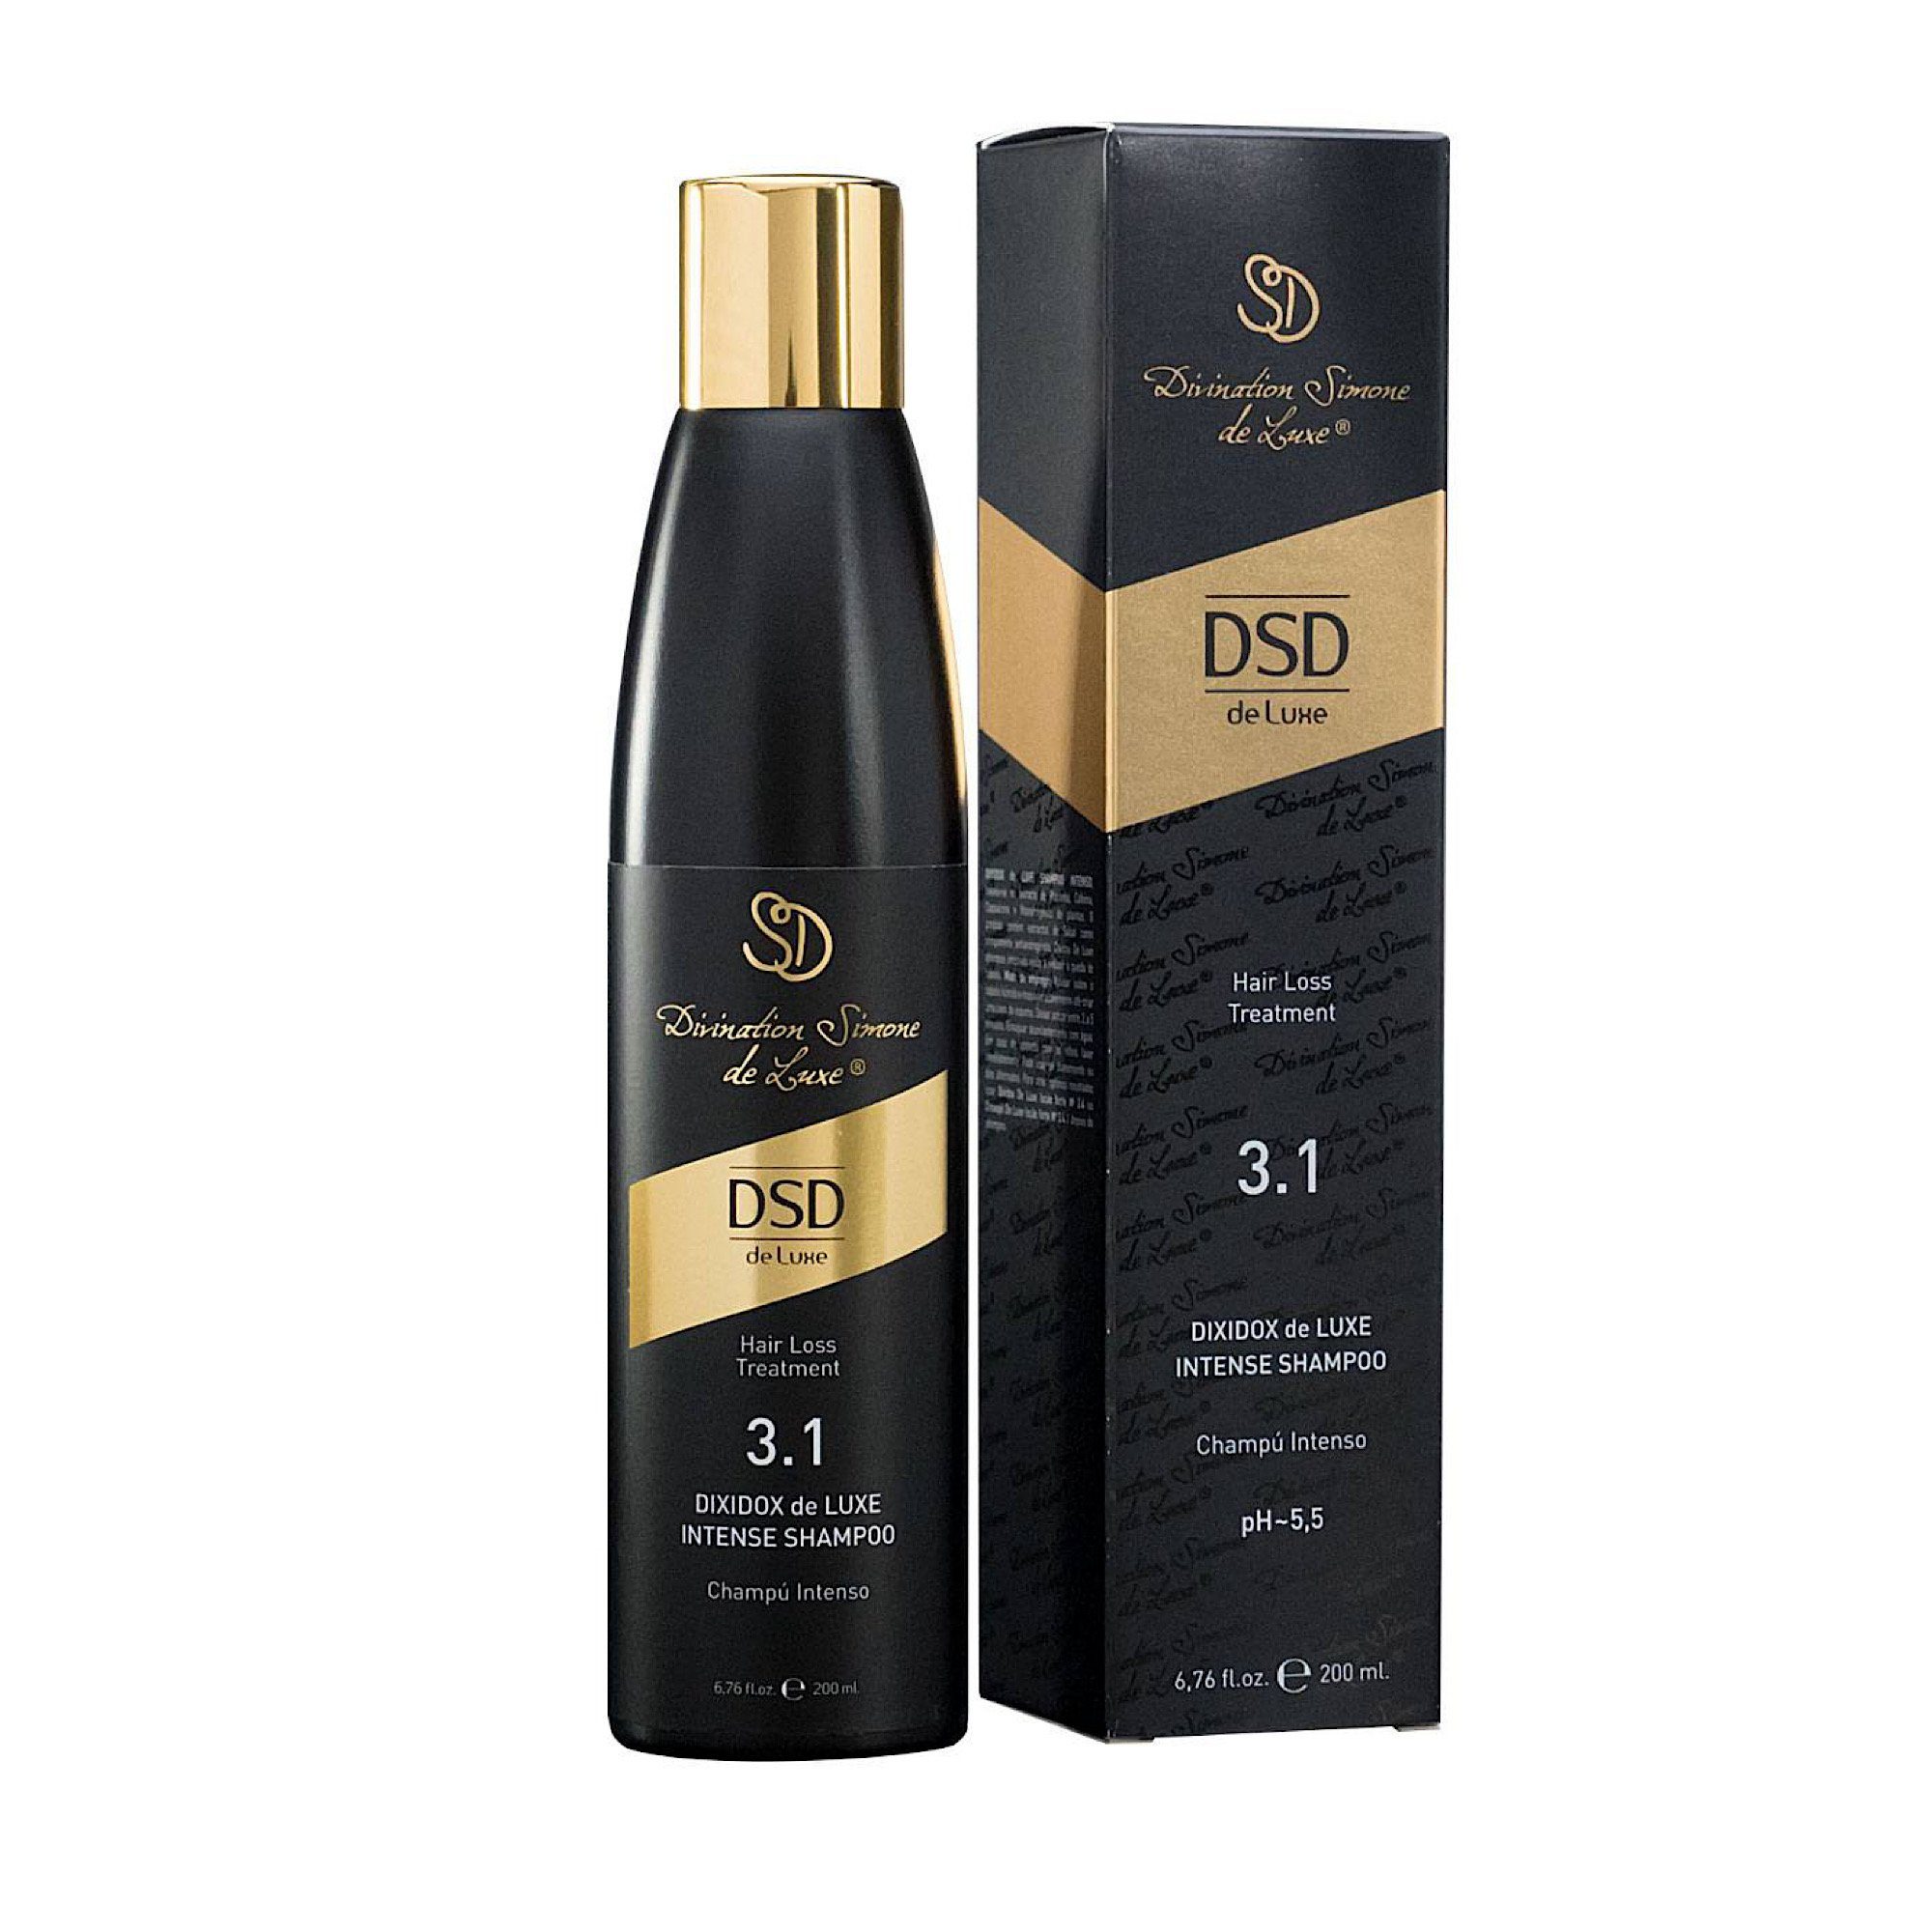 Verkaufsstand DSD de Luxe Kopfhaut-Pflegeshampoo 1-tlg. Shampoo, Intense 3.1